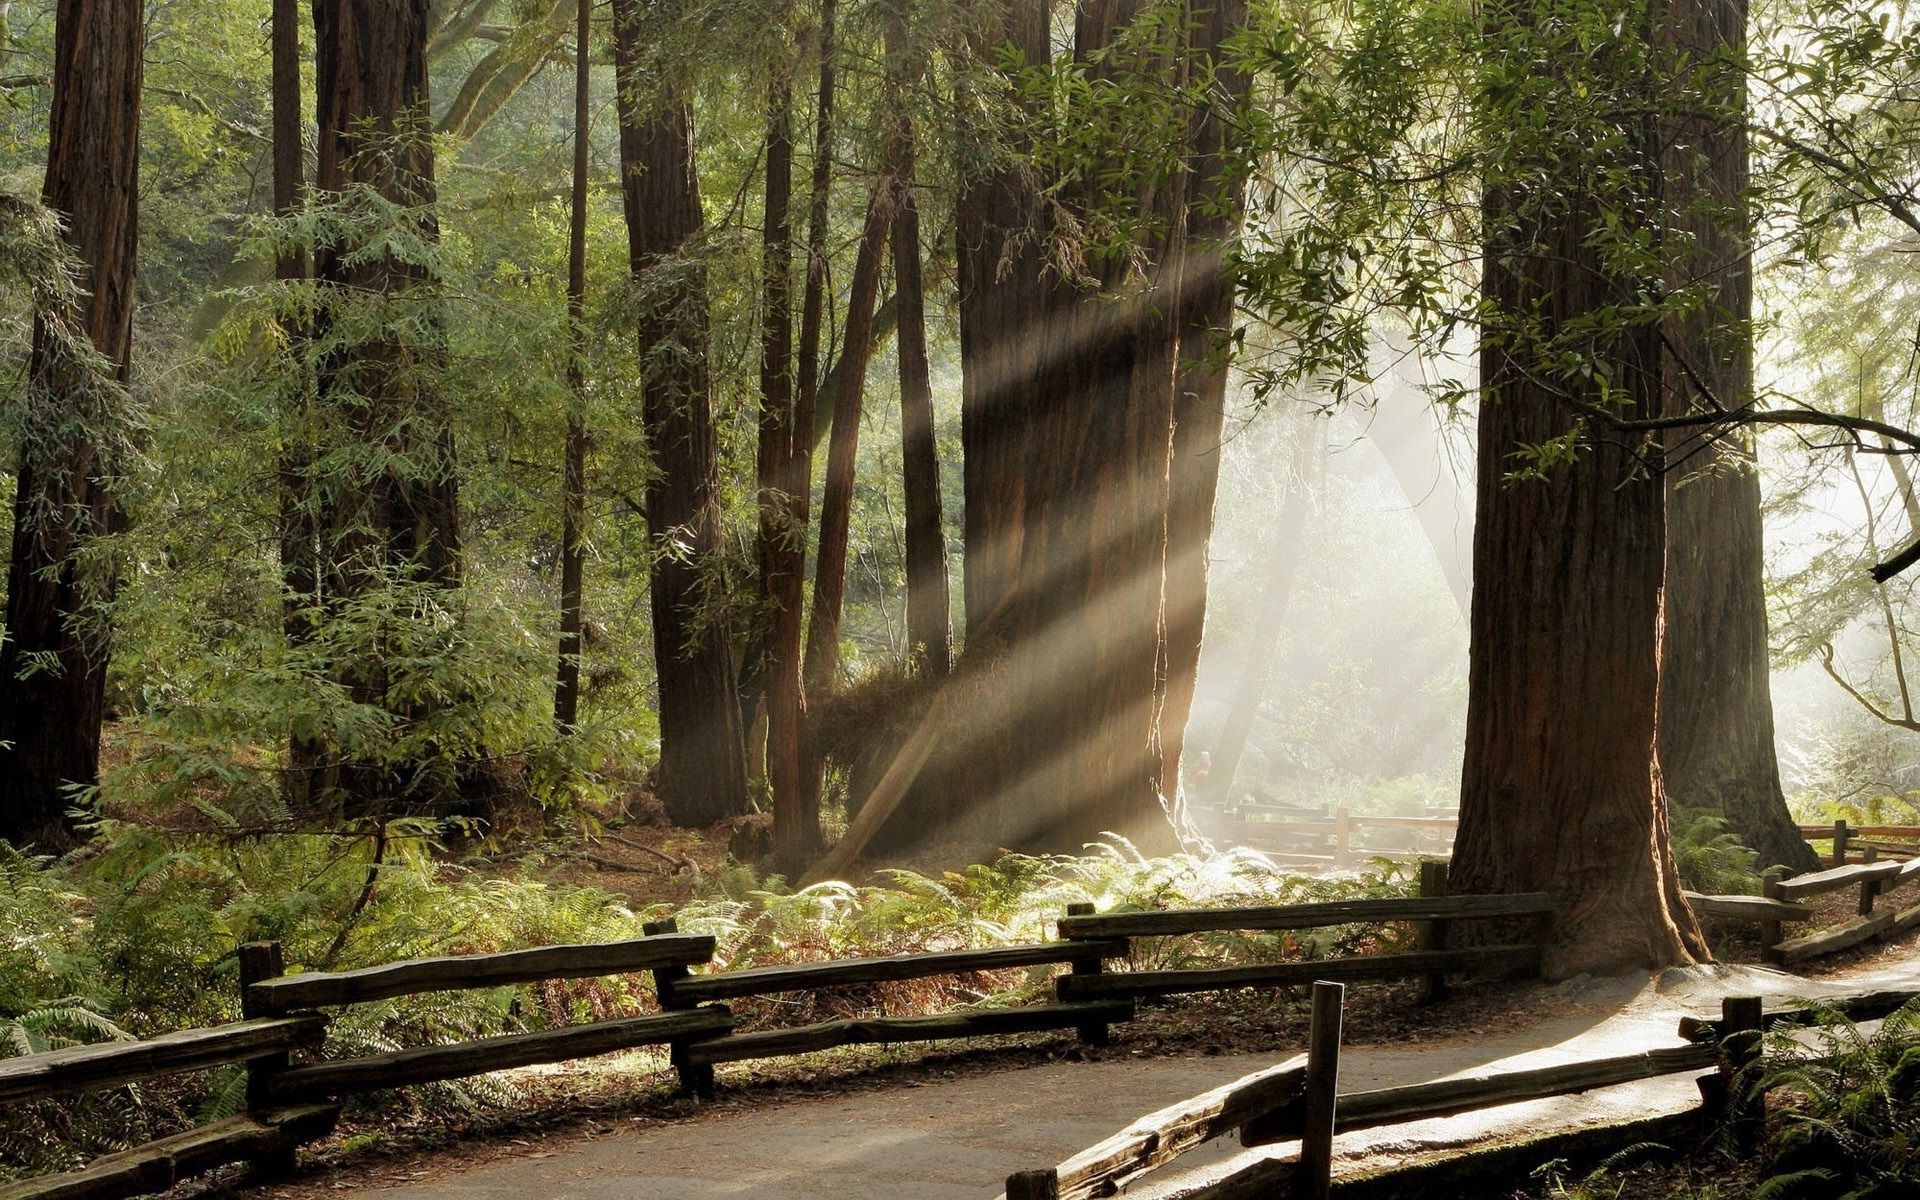 дороги древесины дерево природа пейзаж лист парк свет на открытом воздухе руководство путешествия туман осень среды